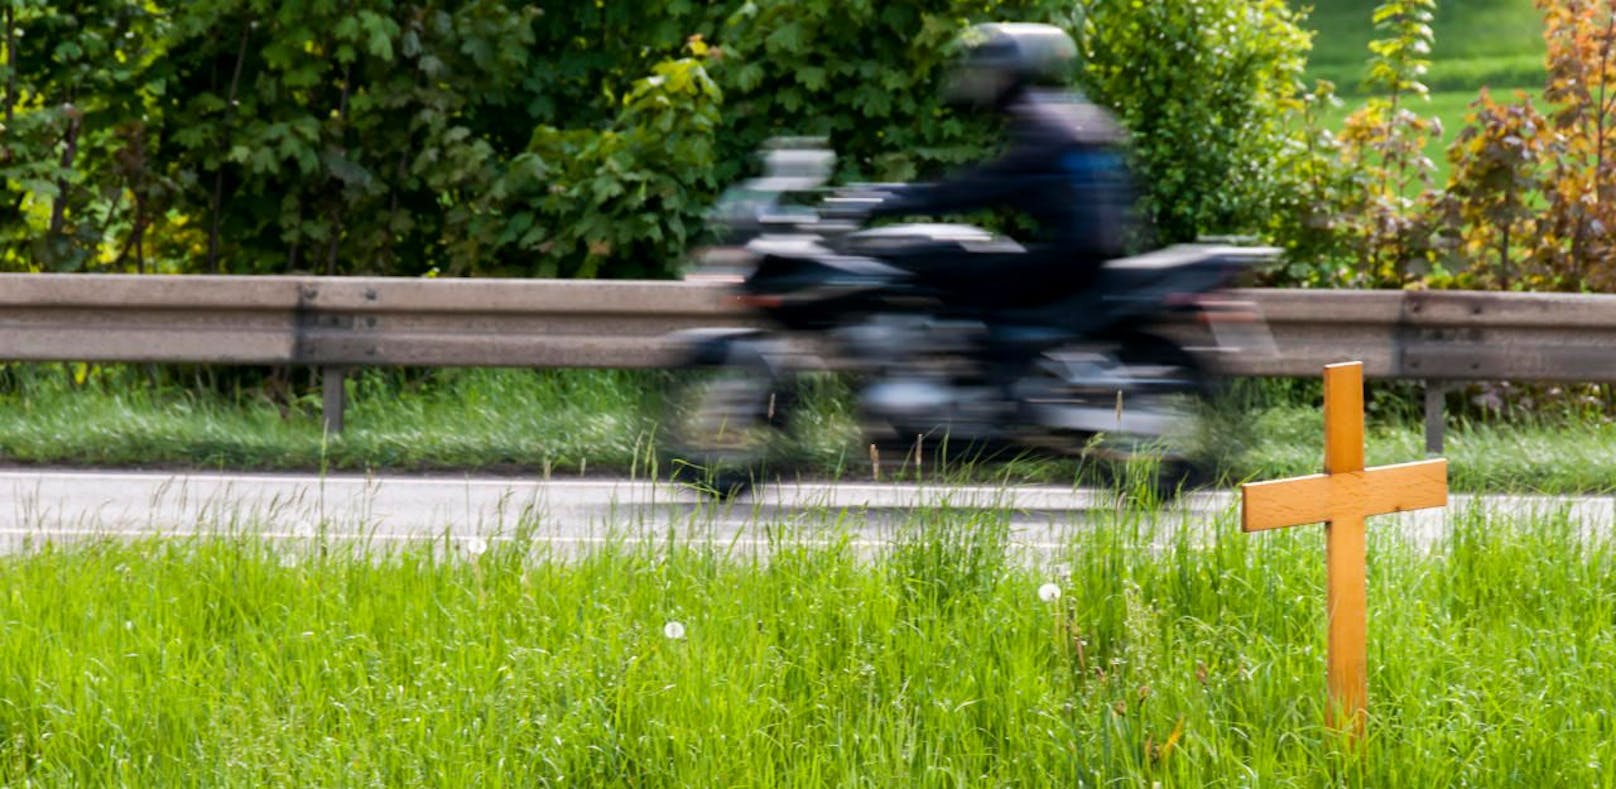 Frau kollidiert mit Motorrad ihres Gatten, Mann stirbt